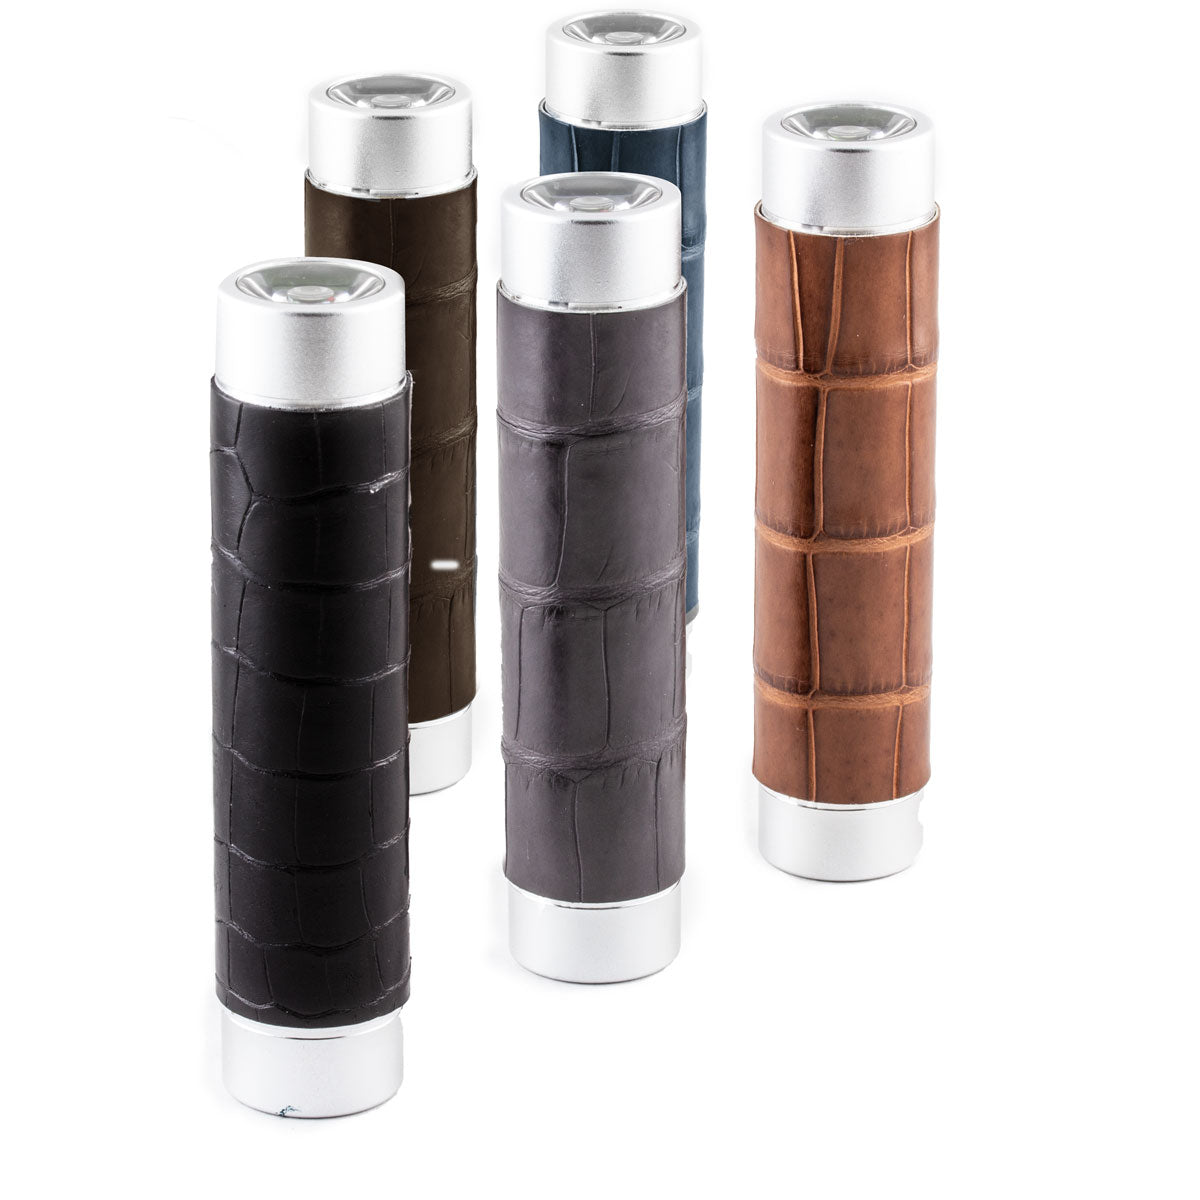 Mini batterie externe & lampes de poche - Alligator - Chargeur universel iPhone , Samsung , smartphone, tablette... ( noir, marron, gris)